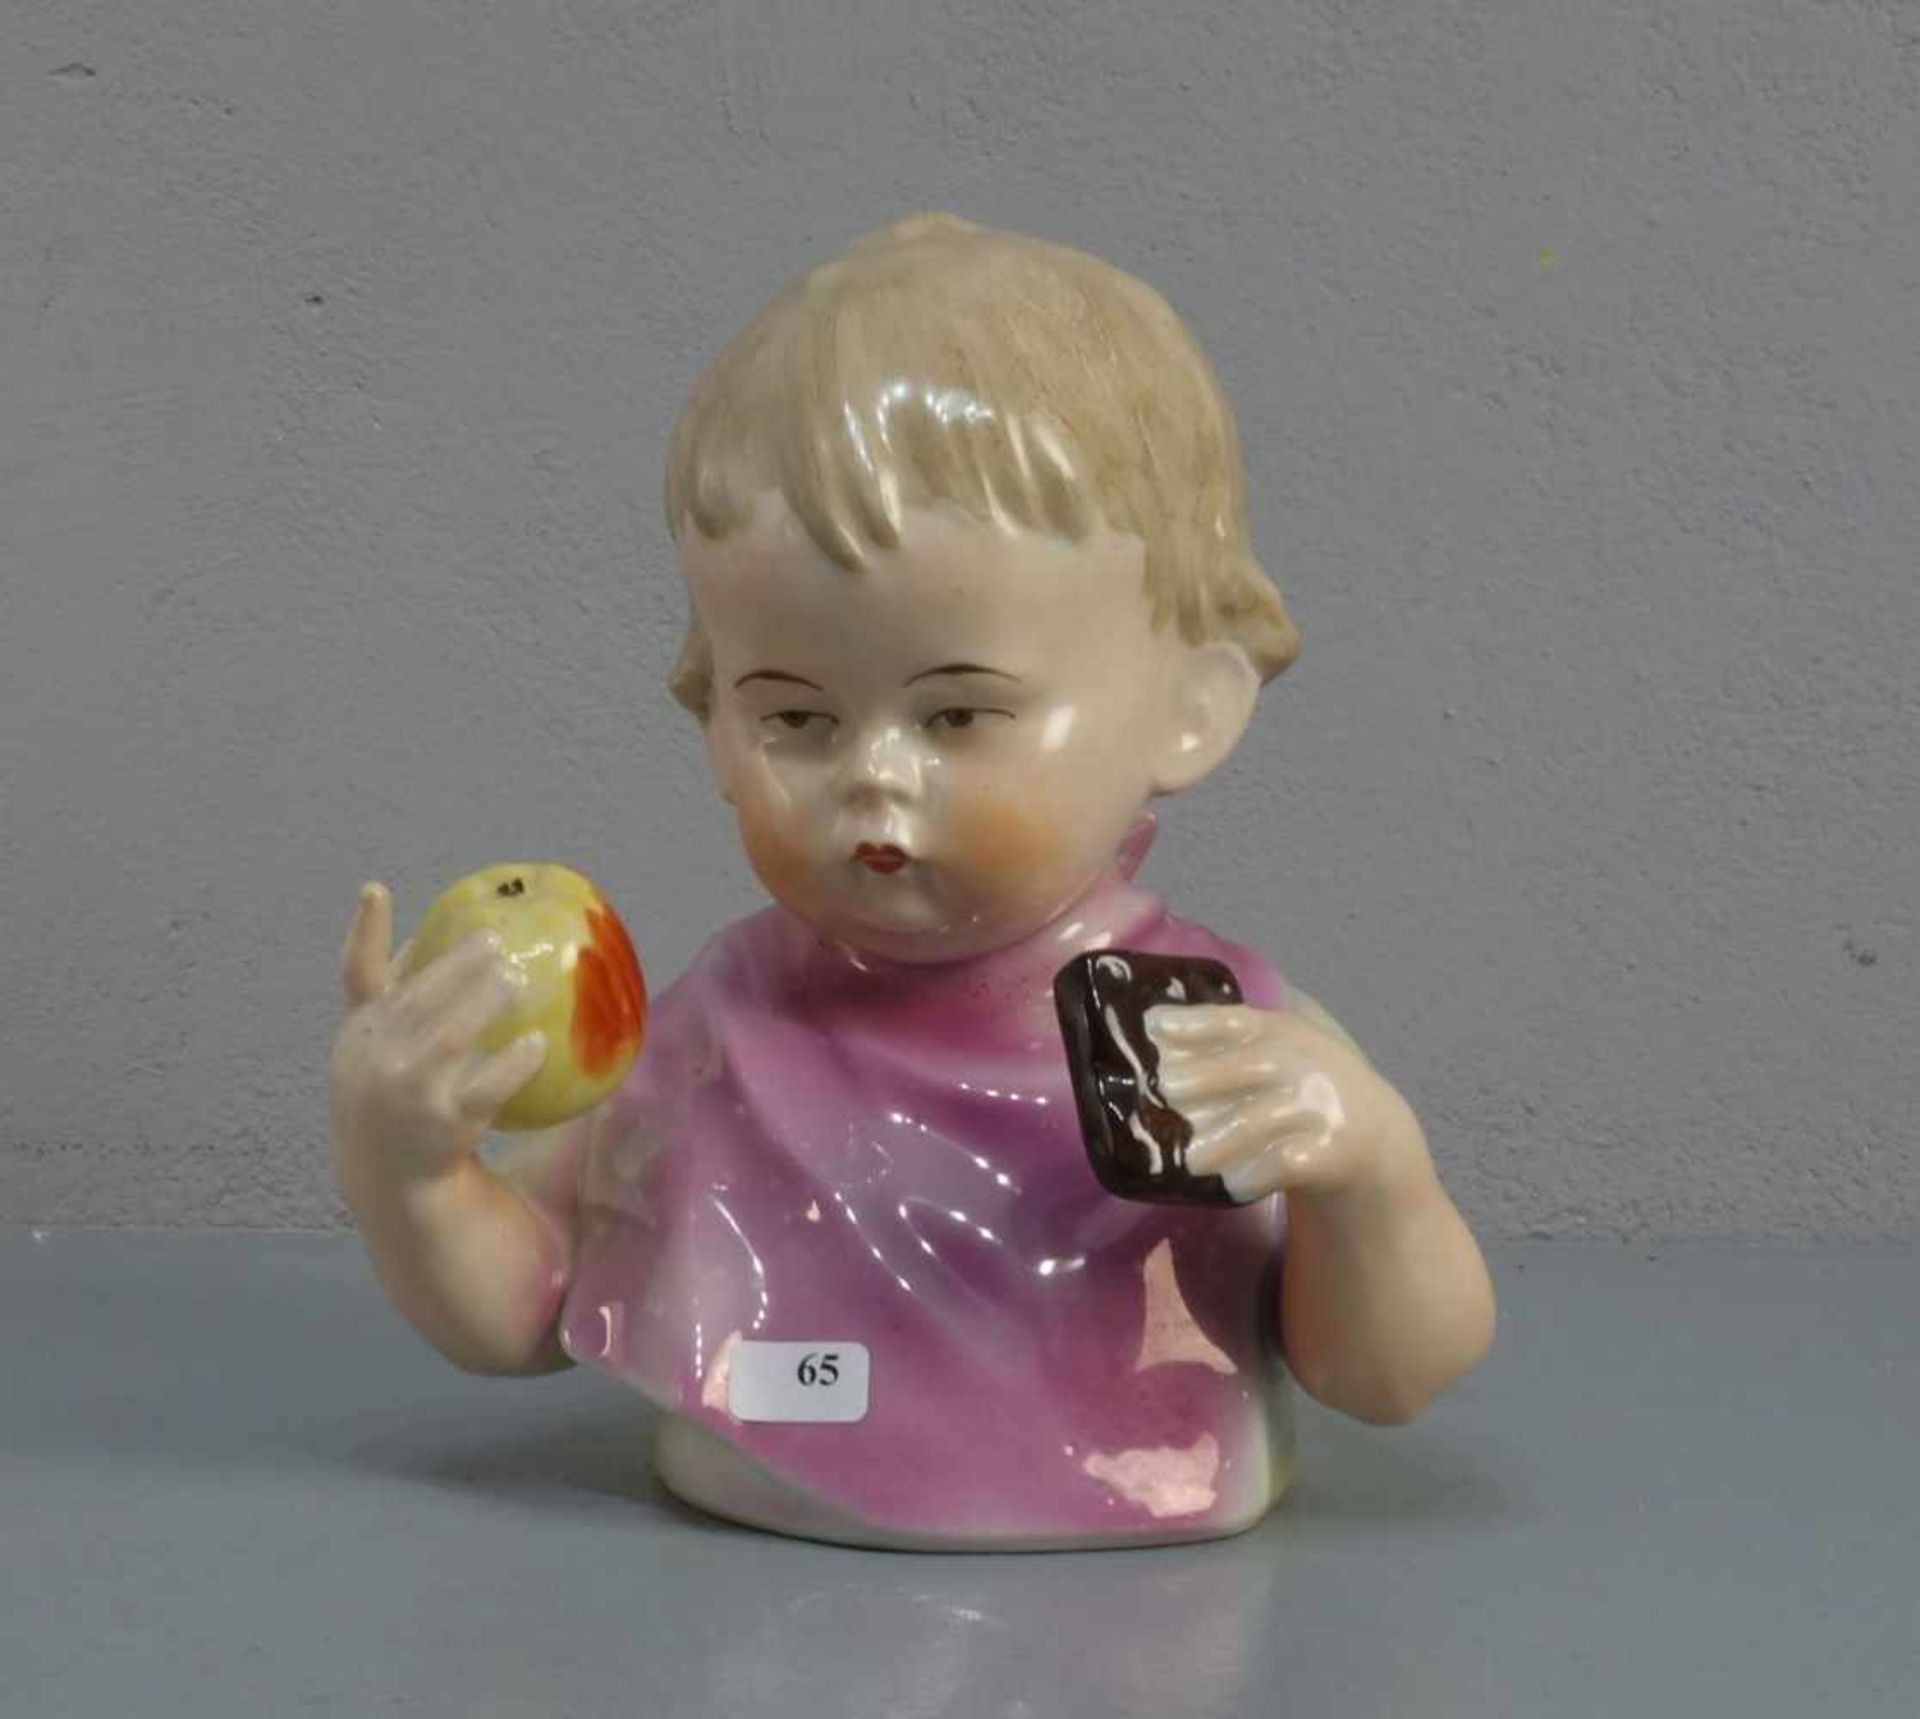 PORZELLANFIGUR / porcelain figure: "Büste eines Kindes mit Apfel und Keks", Porzellan, undeutlich